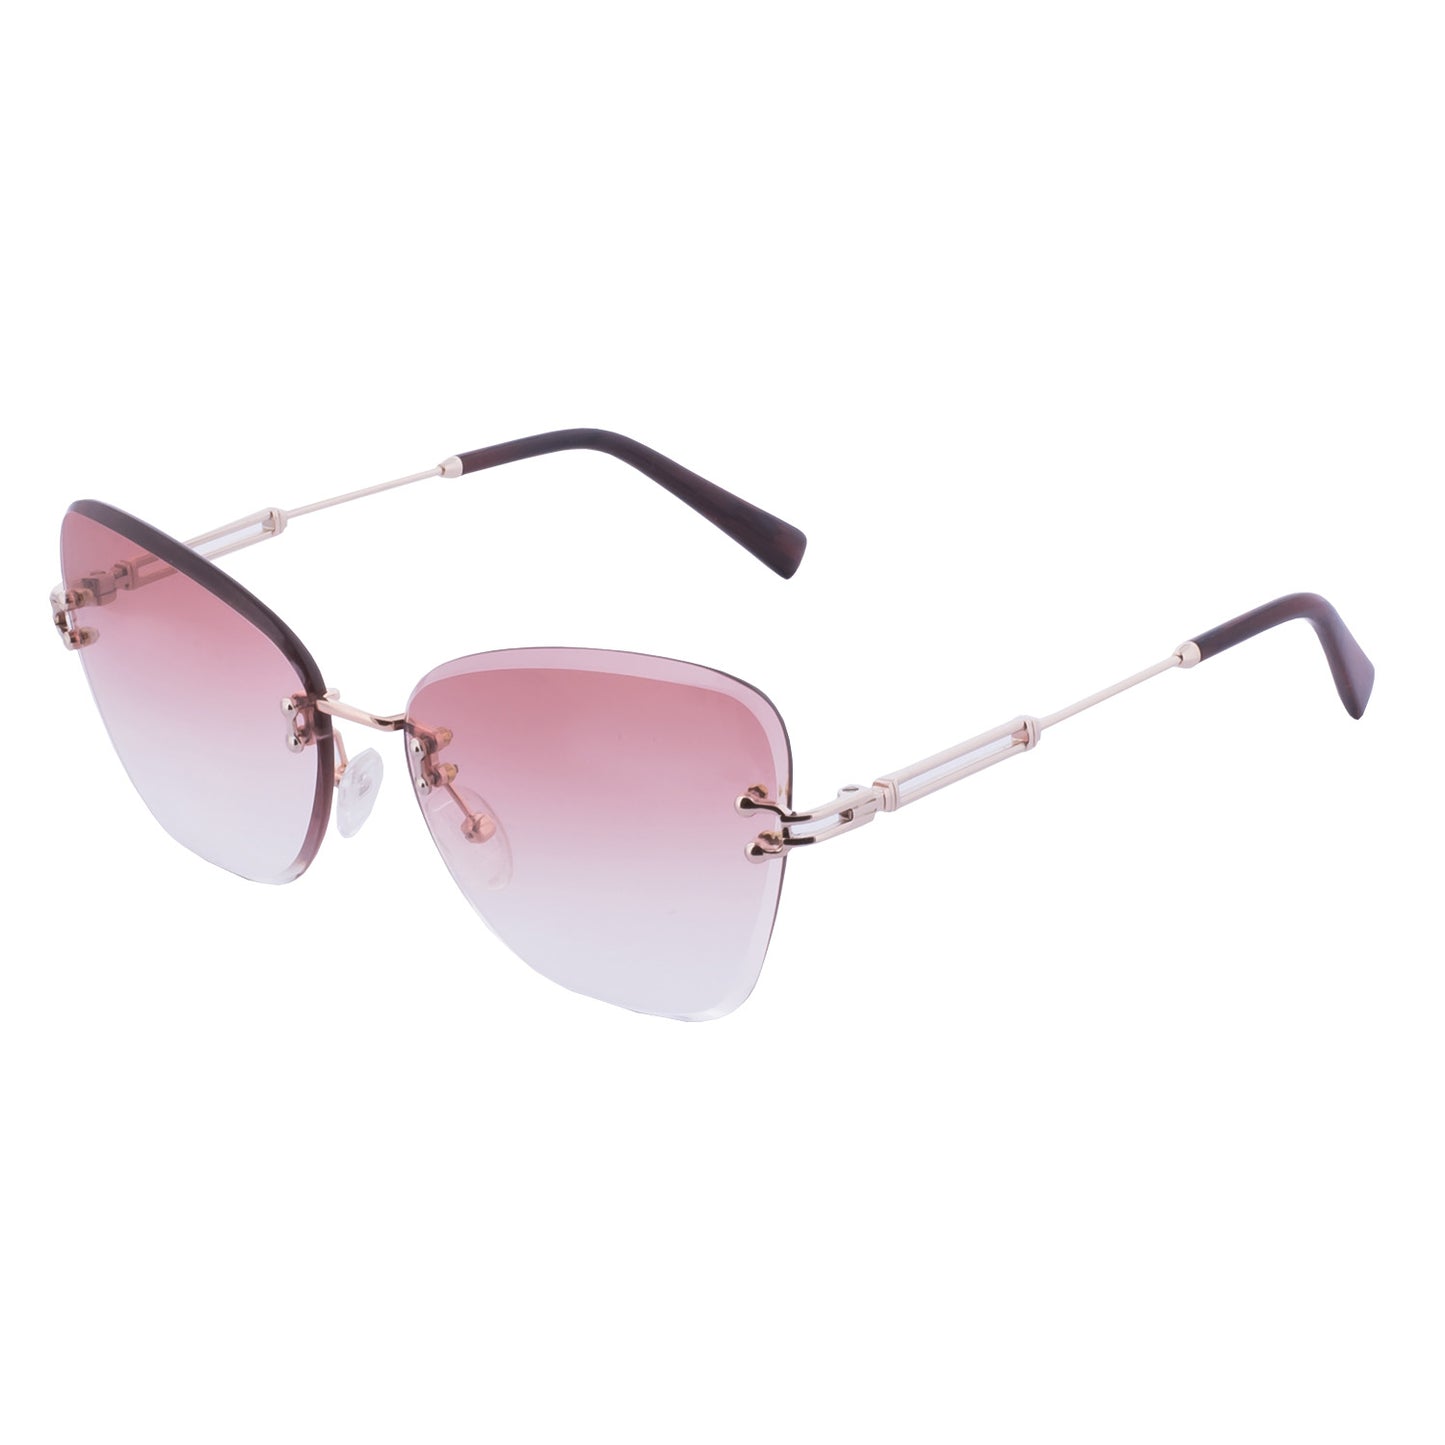 Mokki 90s Butterfly Sunglasses in pink